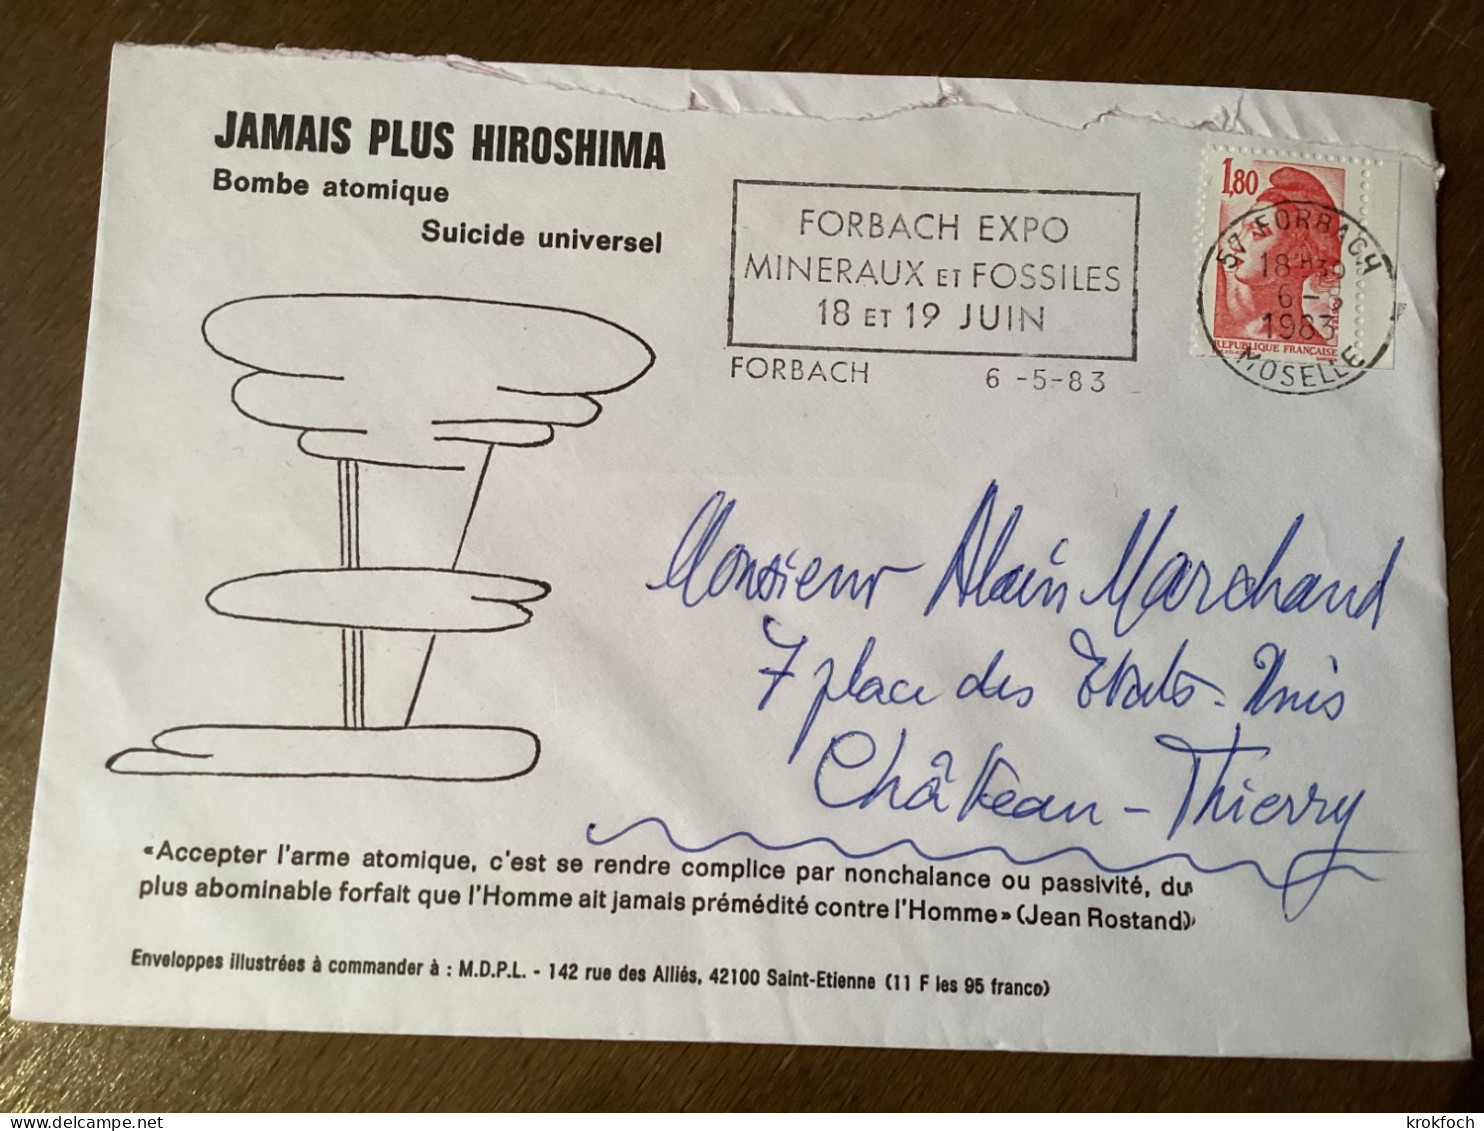 Forbach 1983 Expo Minéraux Et Fossiles - Env. Antiatomique Jamais Plus Hiroshima - Nucléaire - Mechanical Postmarks (Advertisement)